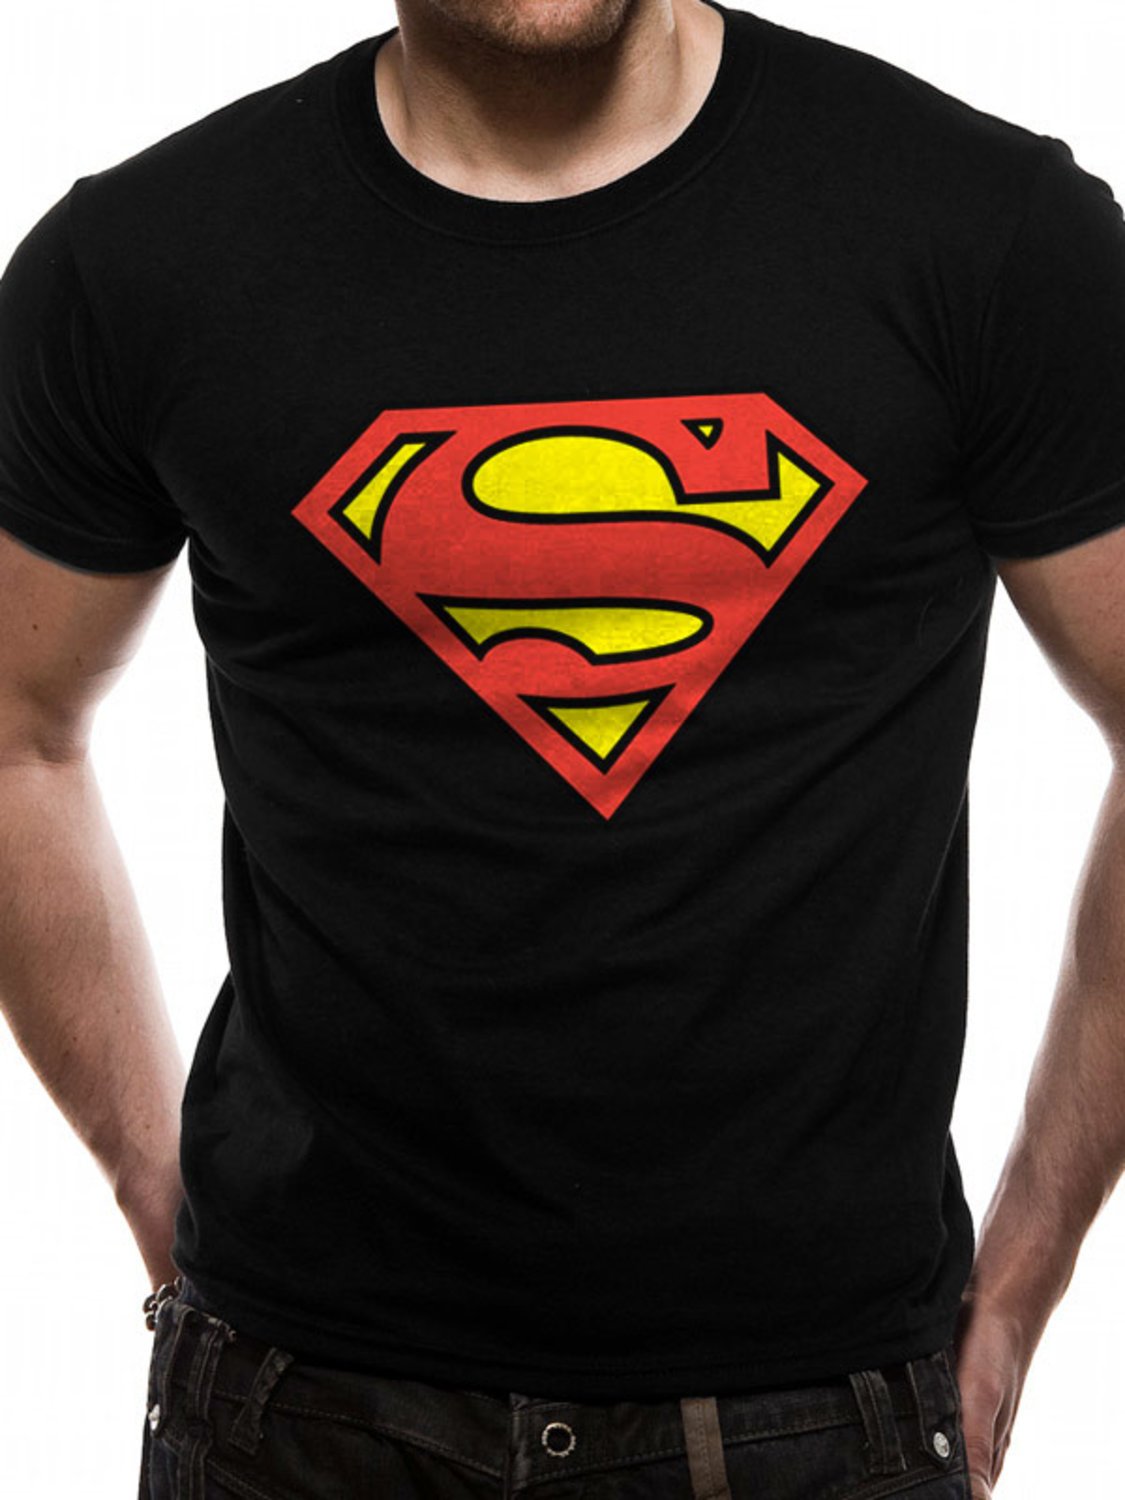 Previs site hoekpunt thee Koop Superman - Logo T-Shirt